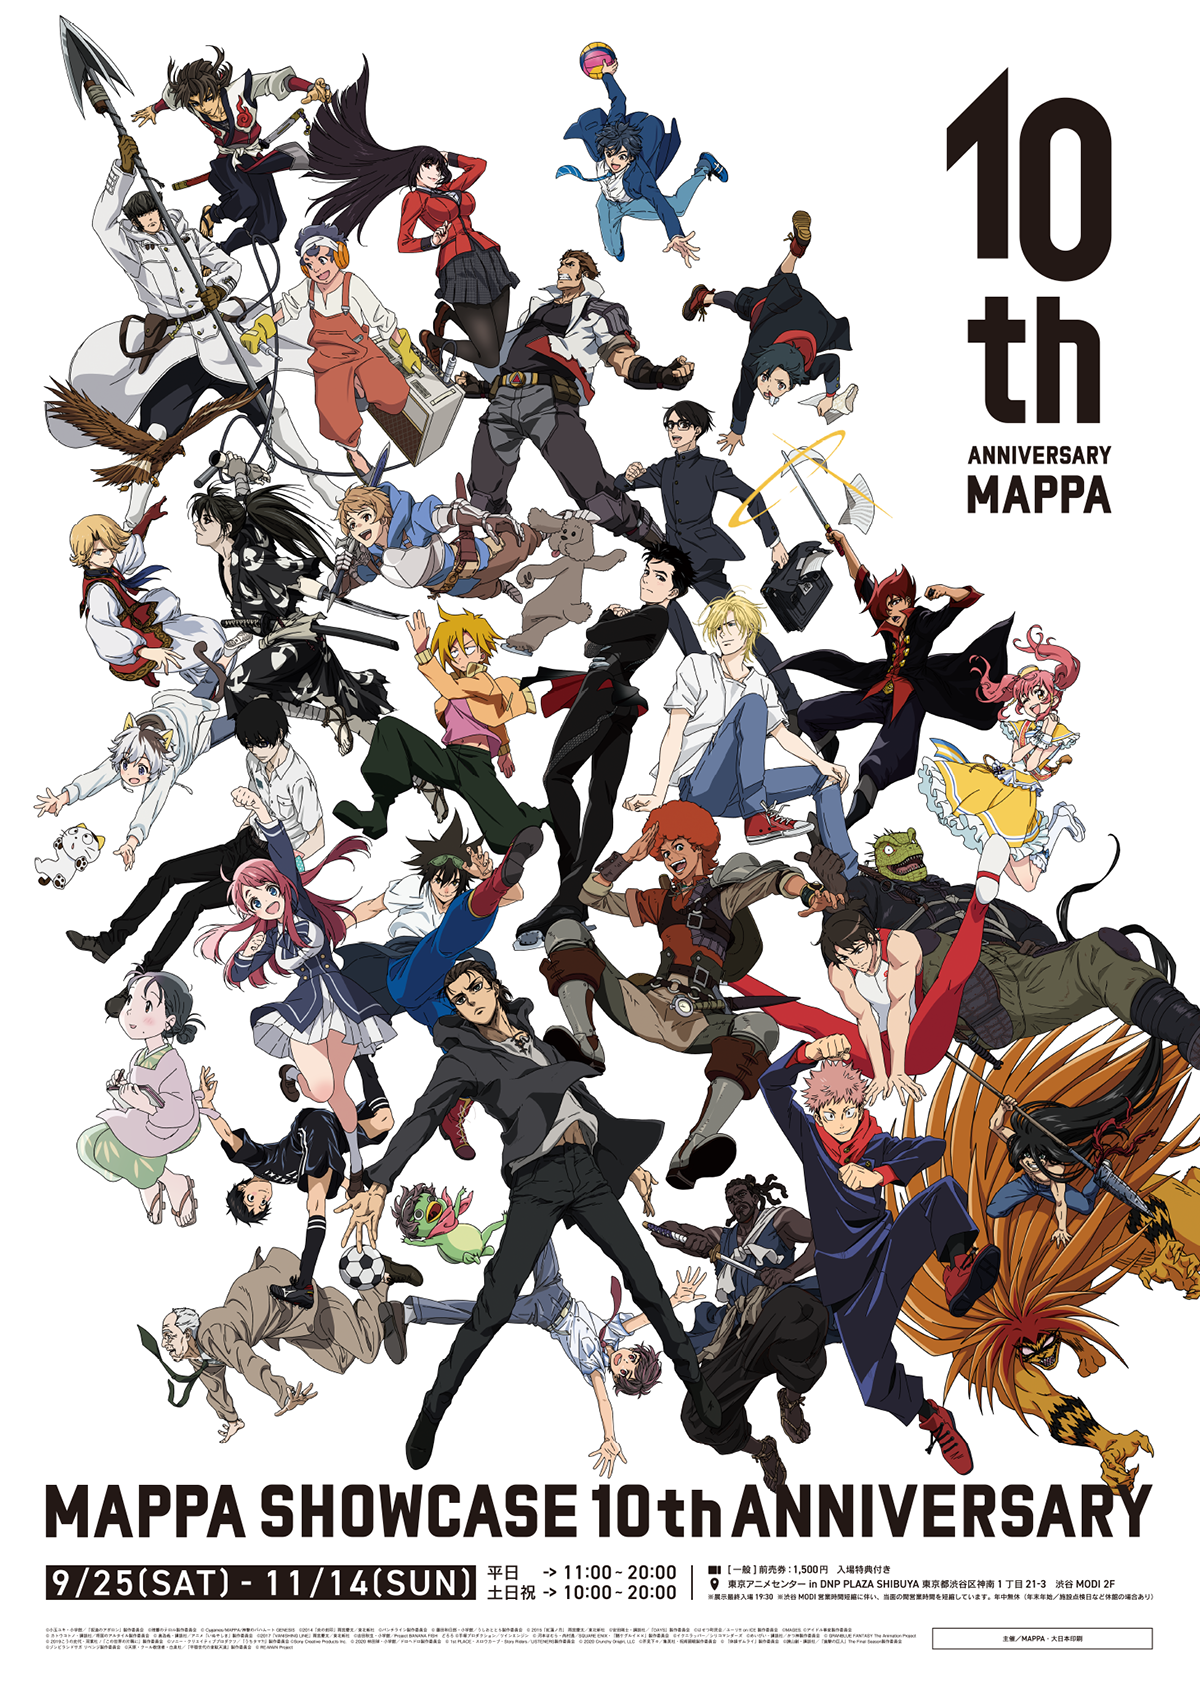 MAPPA's Original Anime Bucchigiri Reveals Character Visuals - Anime Corner